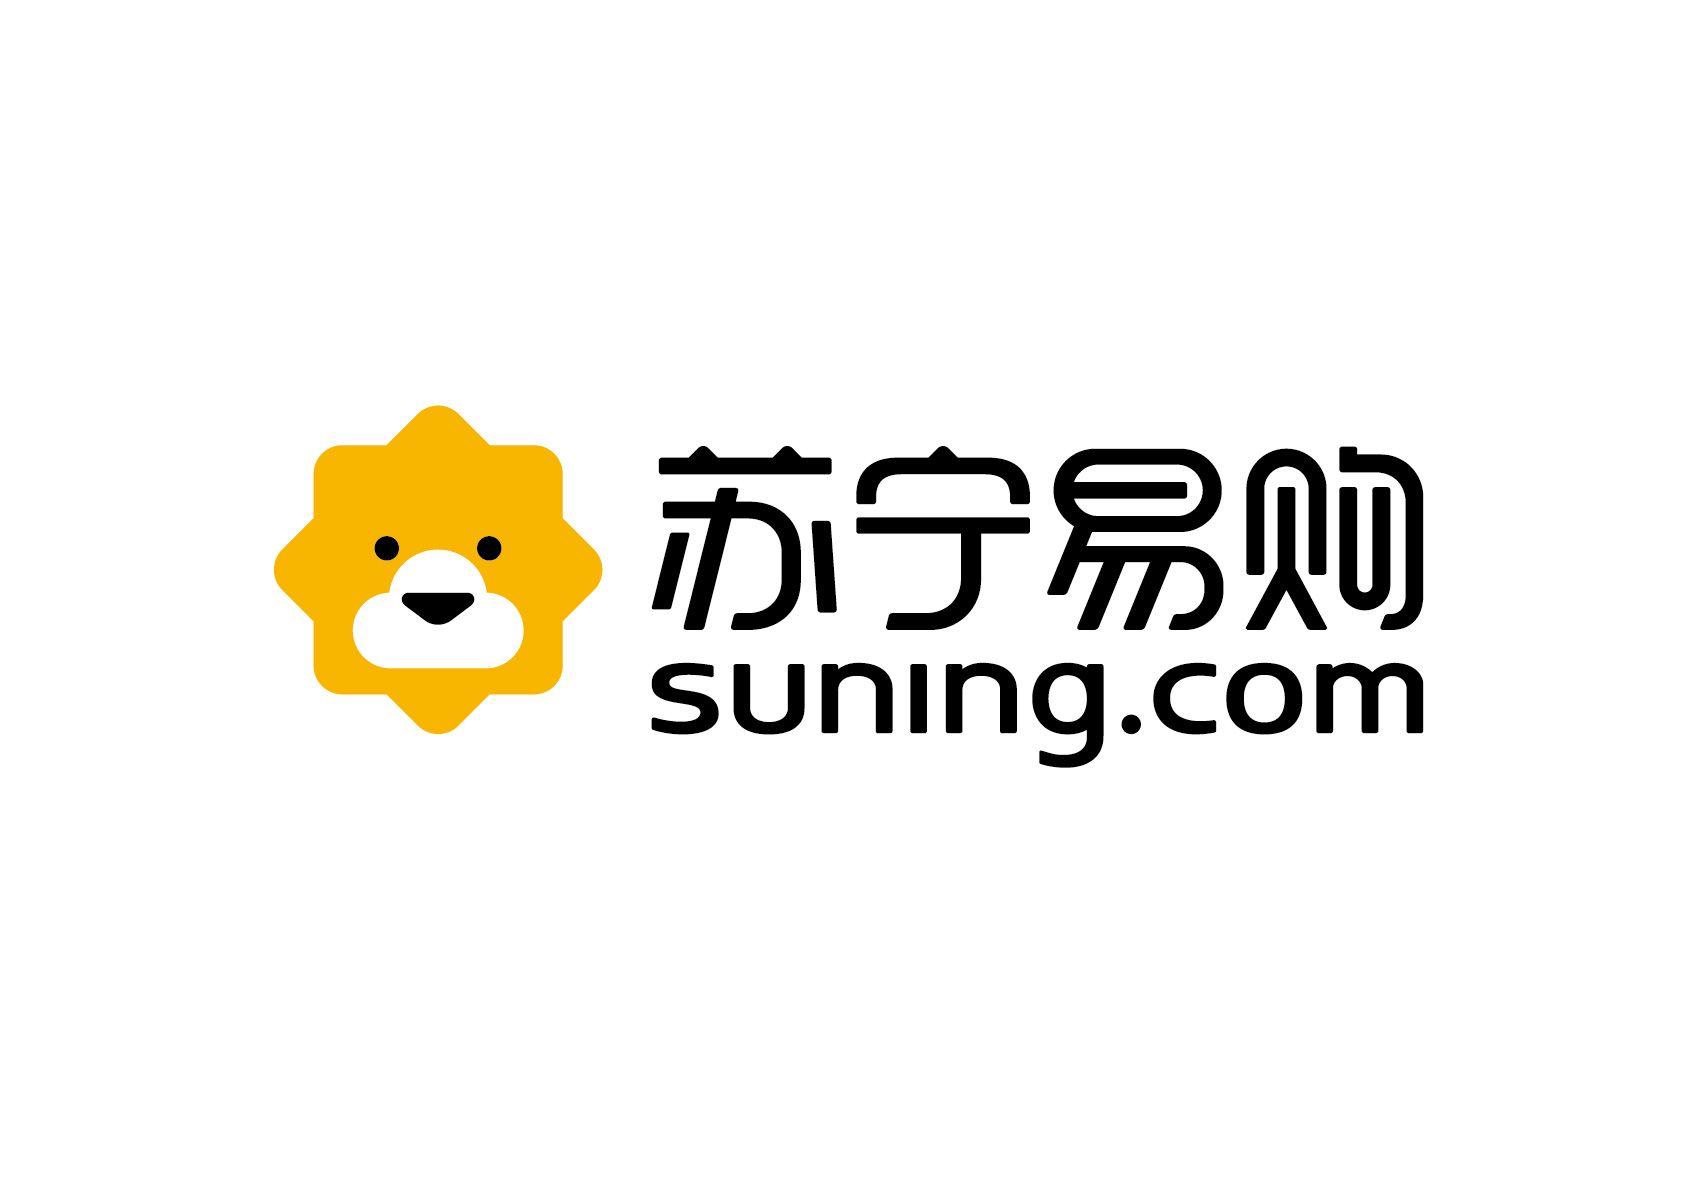 Suning Logo - Suning.com